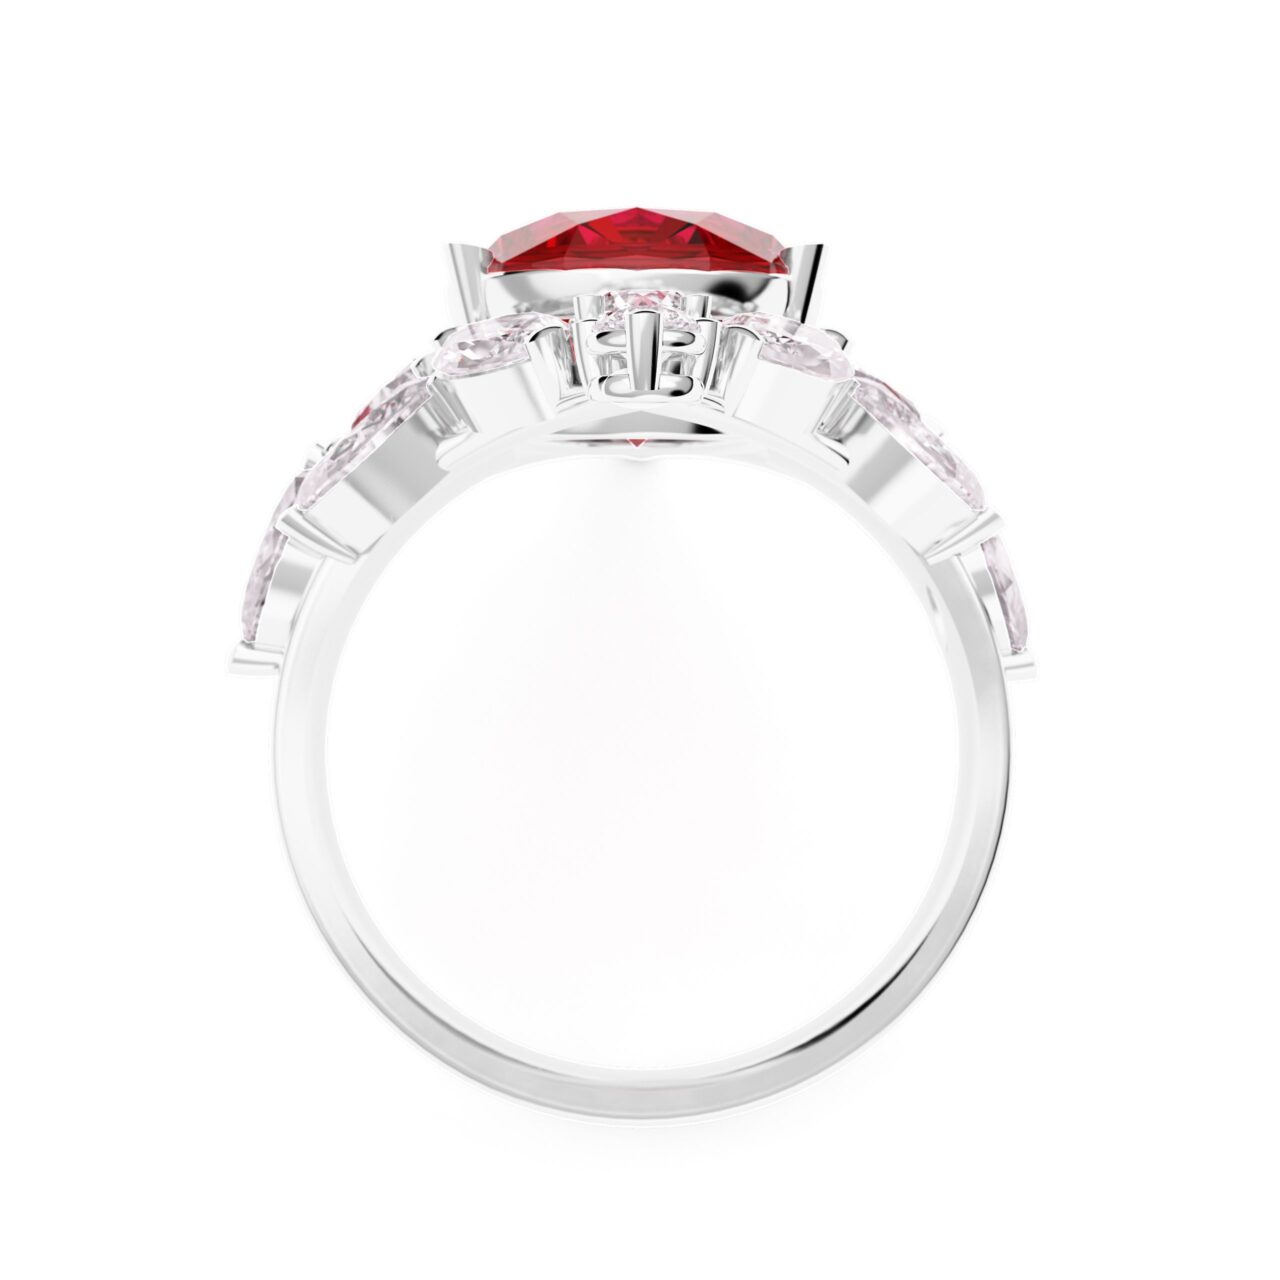 Bague Rubis Royal : un rubis taille ovale de 10 mm entouré de diamants sur un corps en or blanc 18 carats.